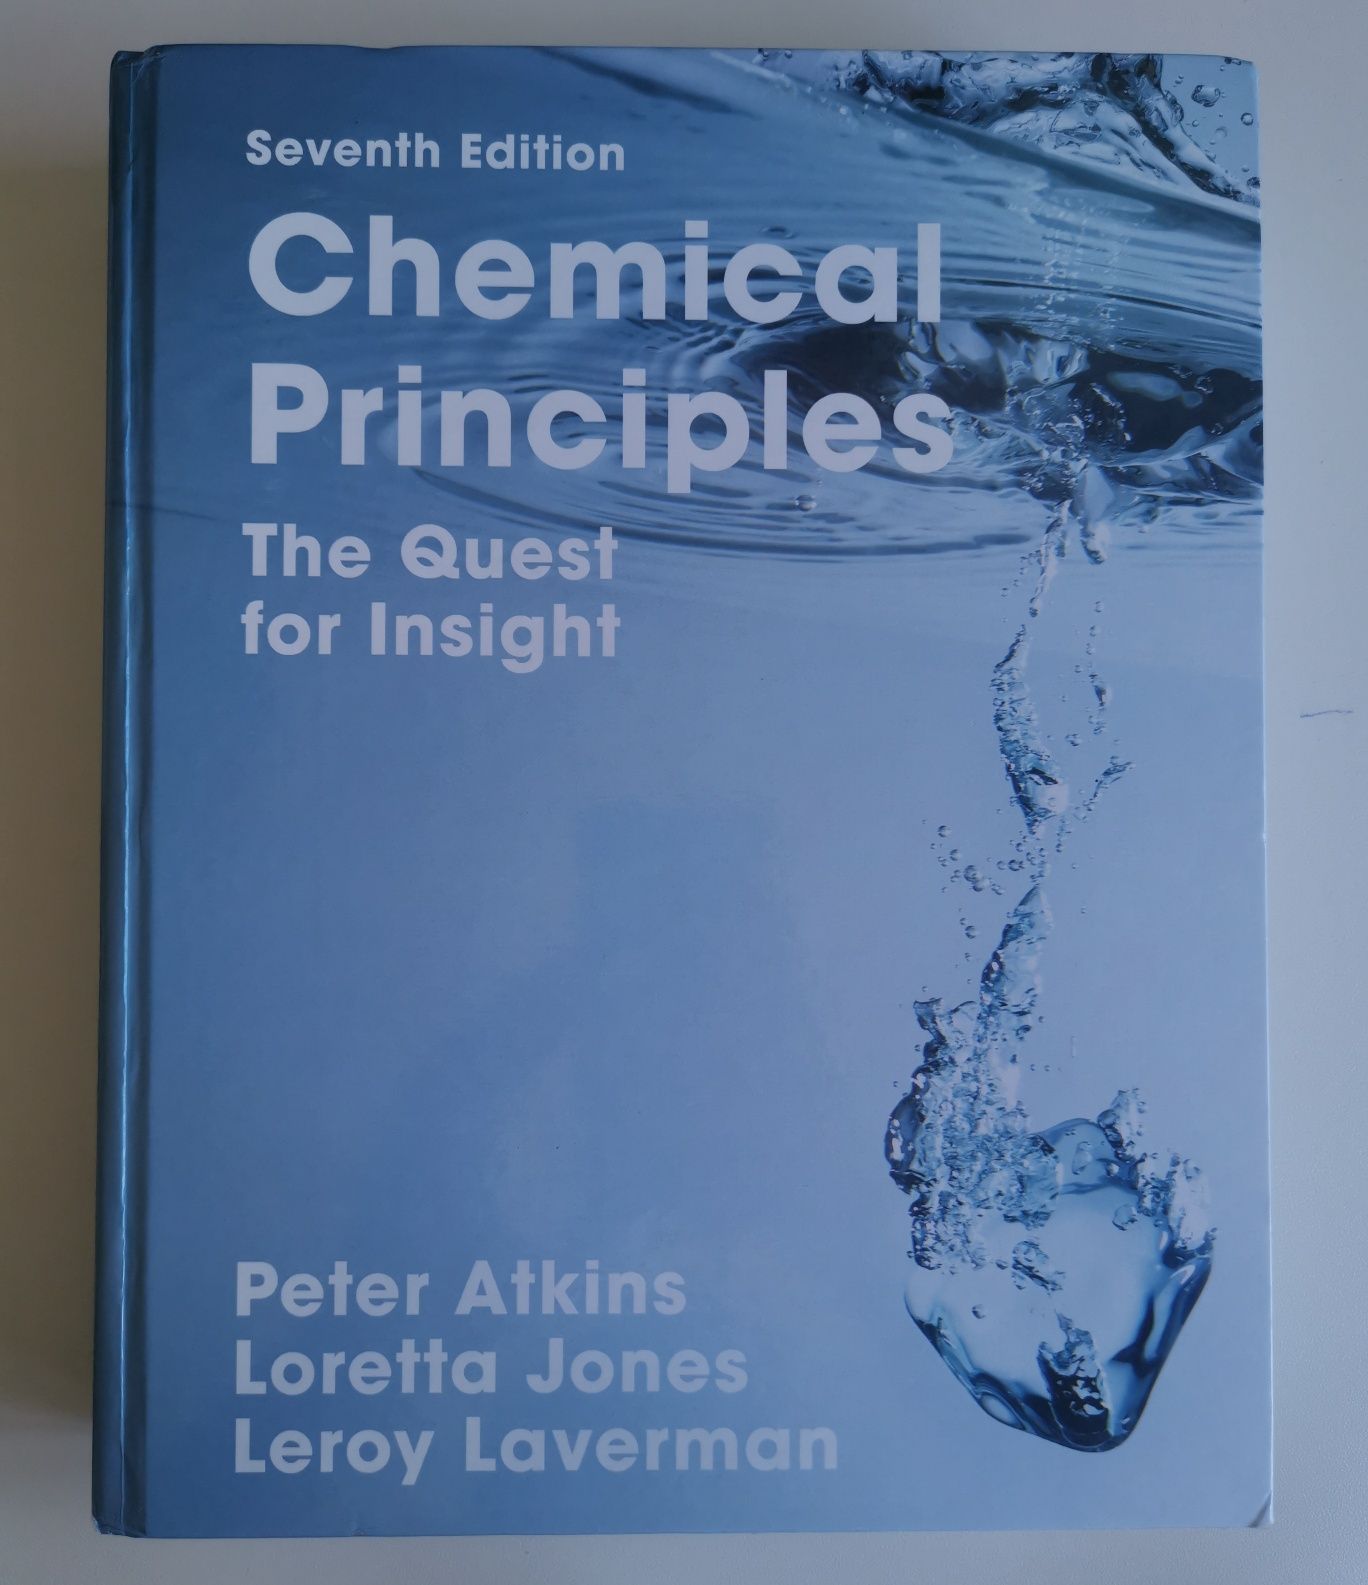 Livros técnicos universitários de química, físico quimica, biologia